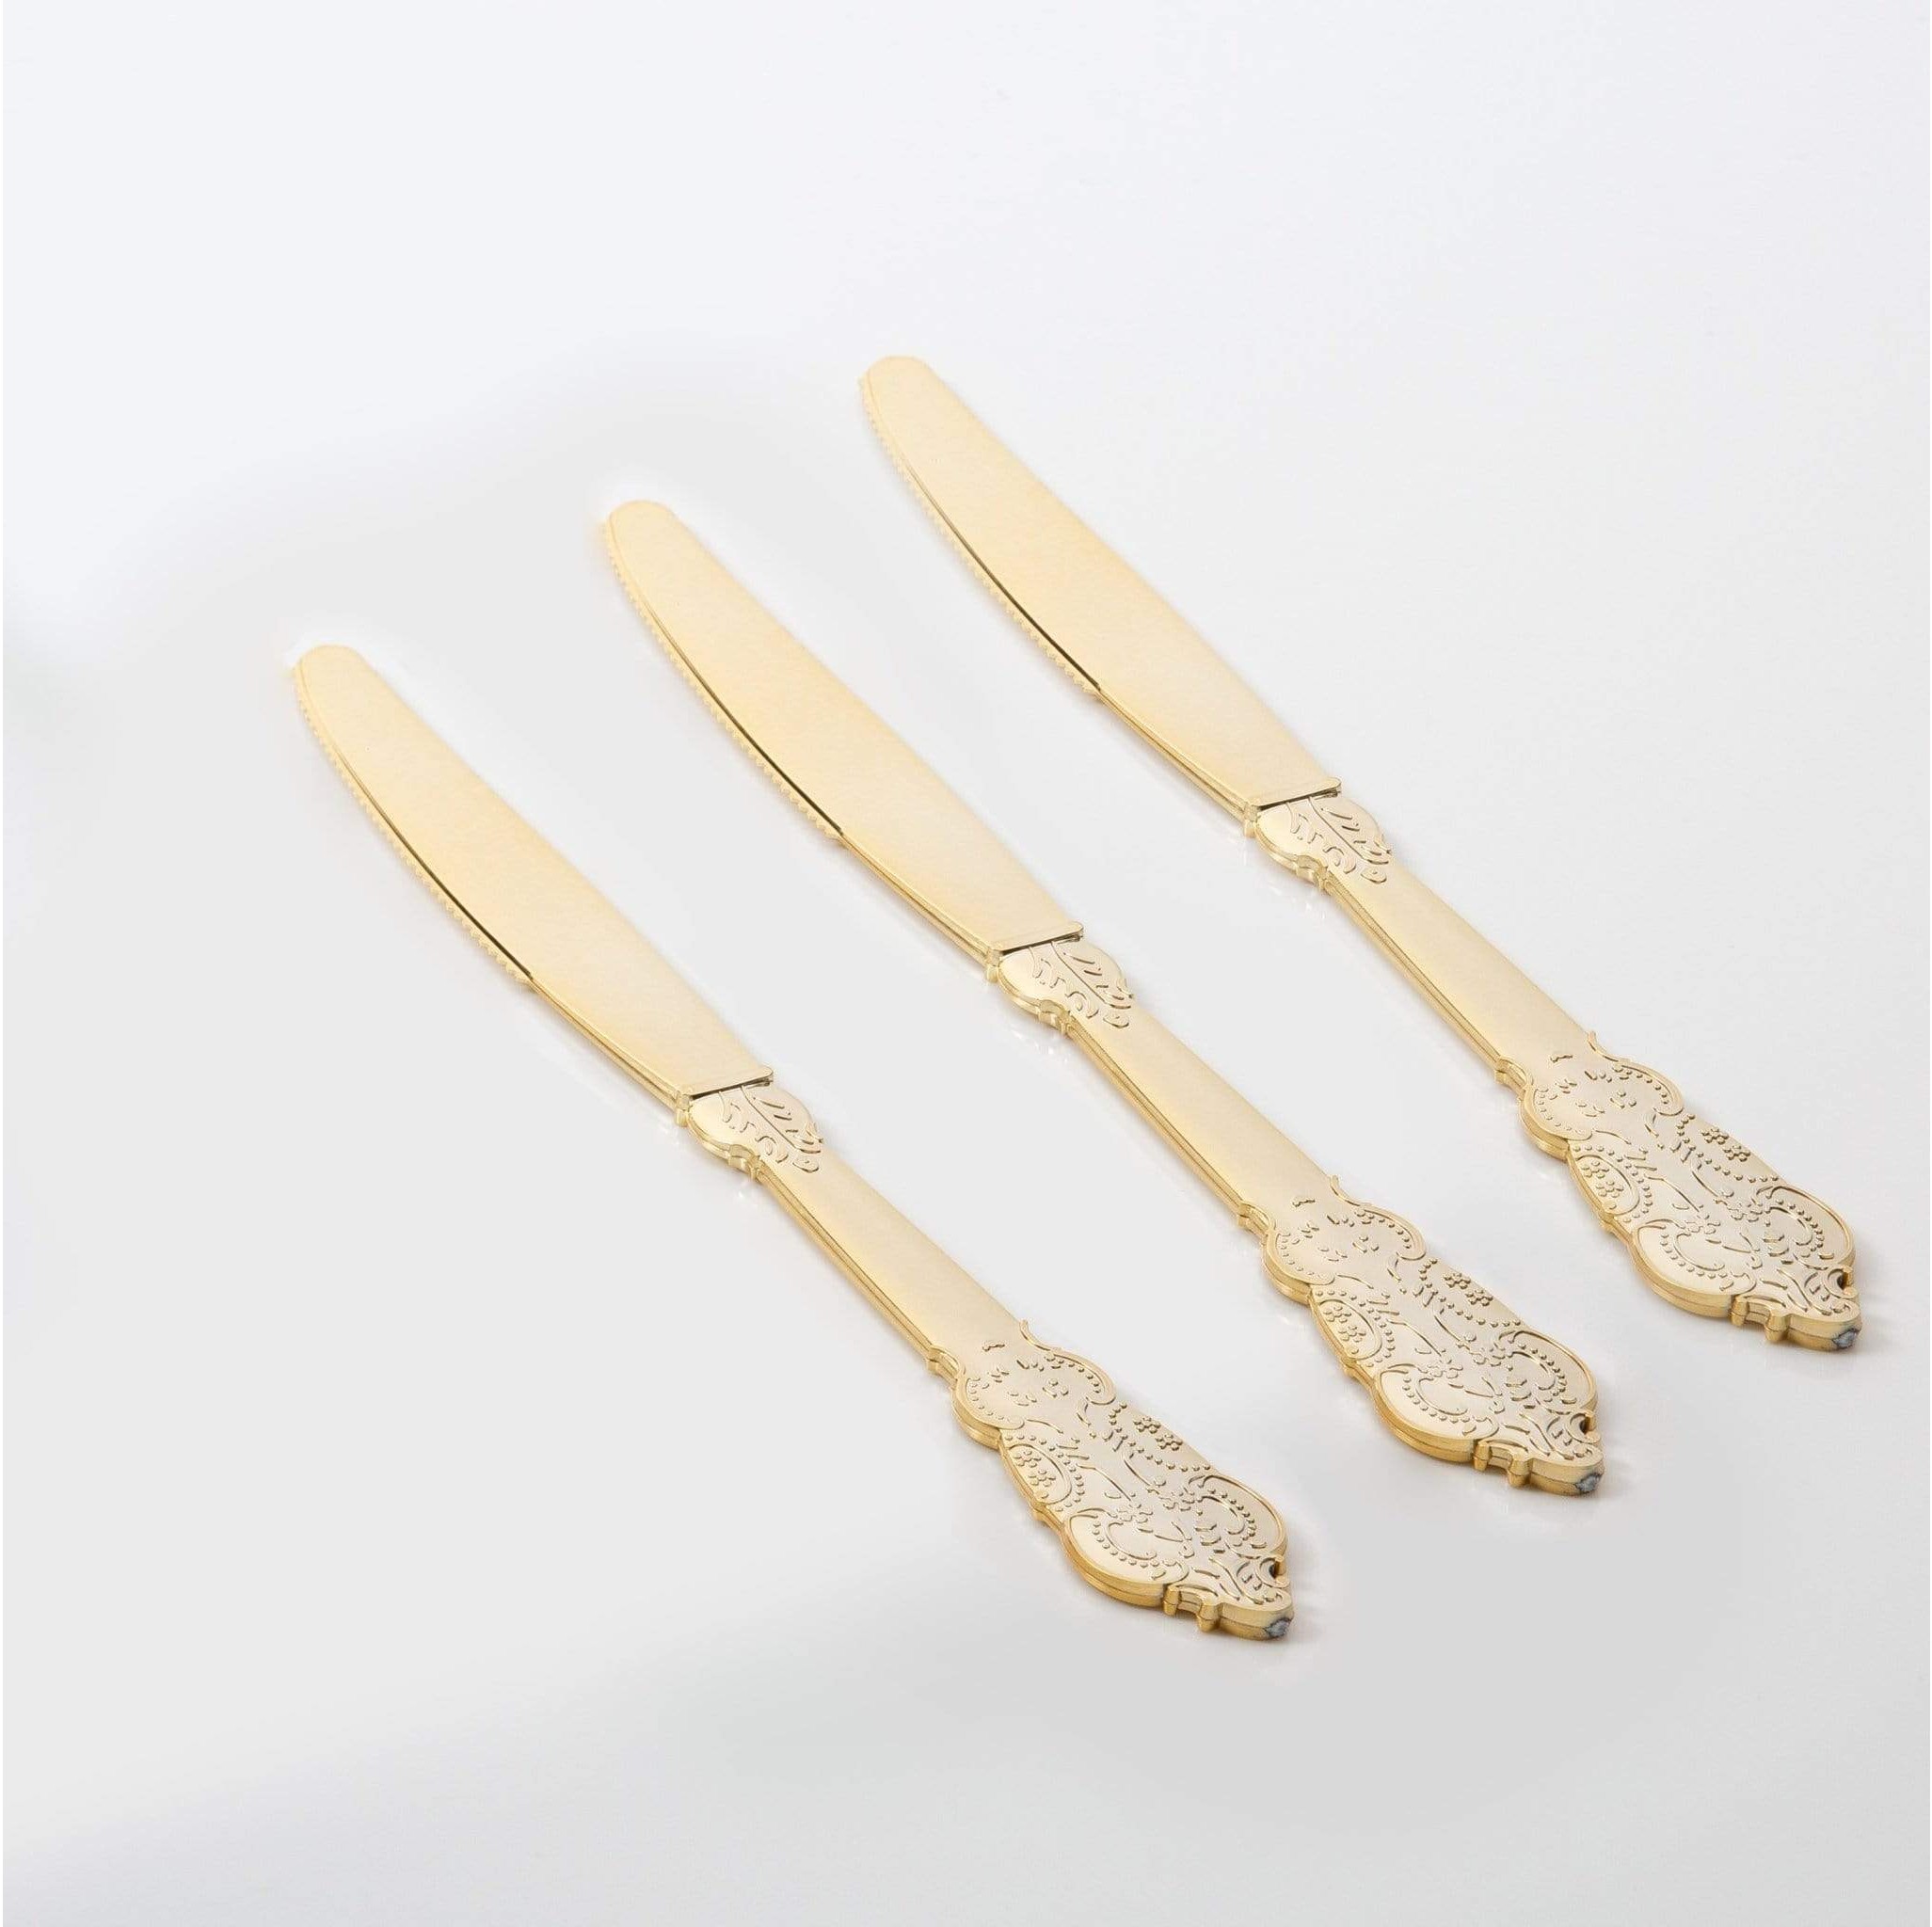 Luxe Party Venetian Design Gold Plastic Knives - 20 pcs